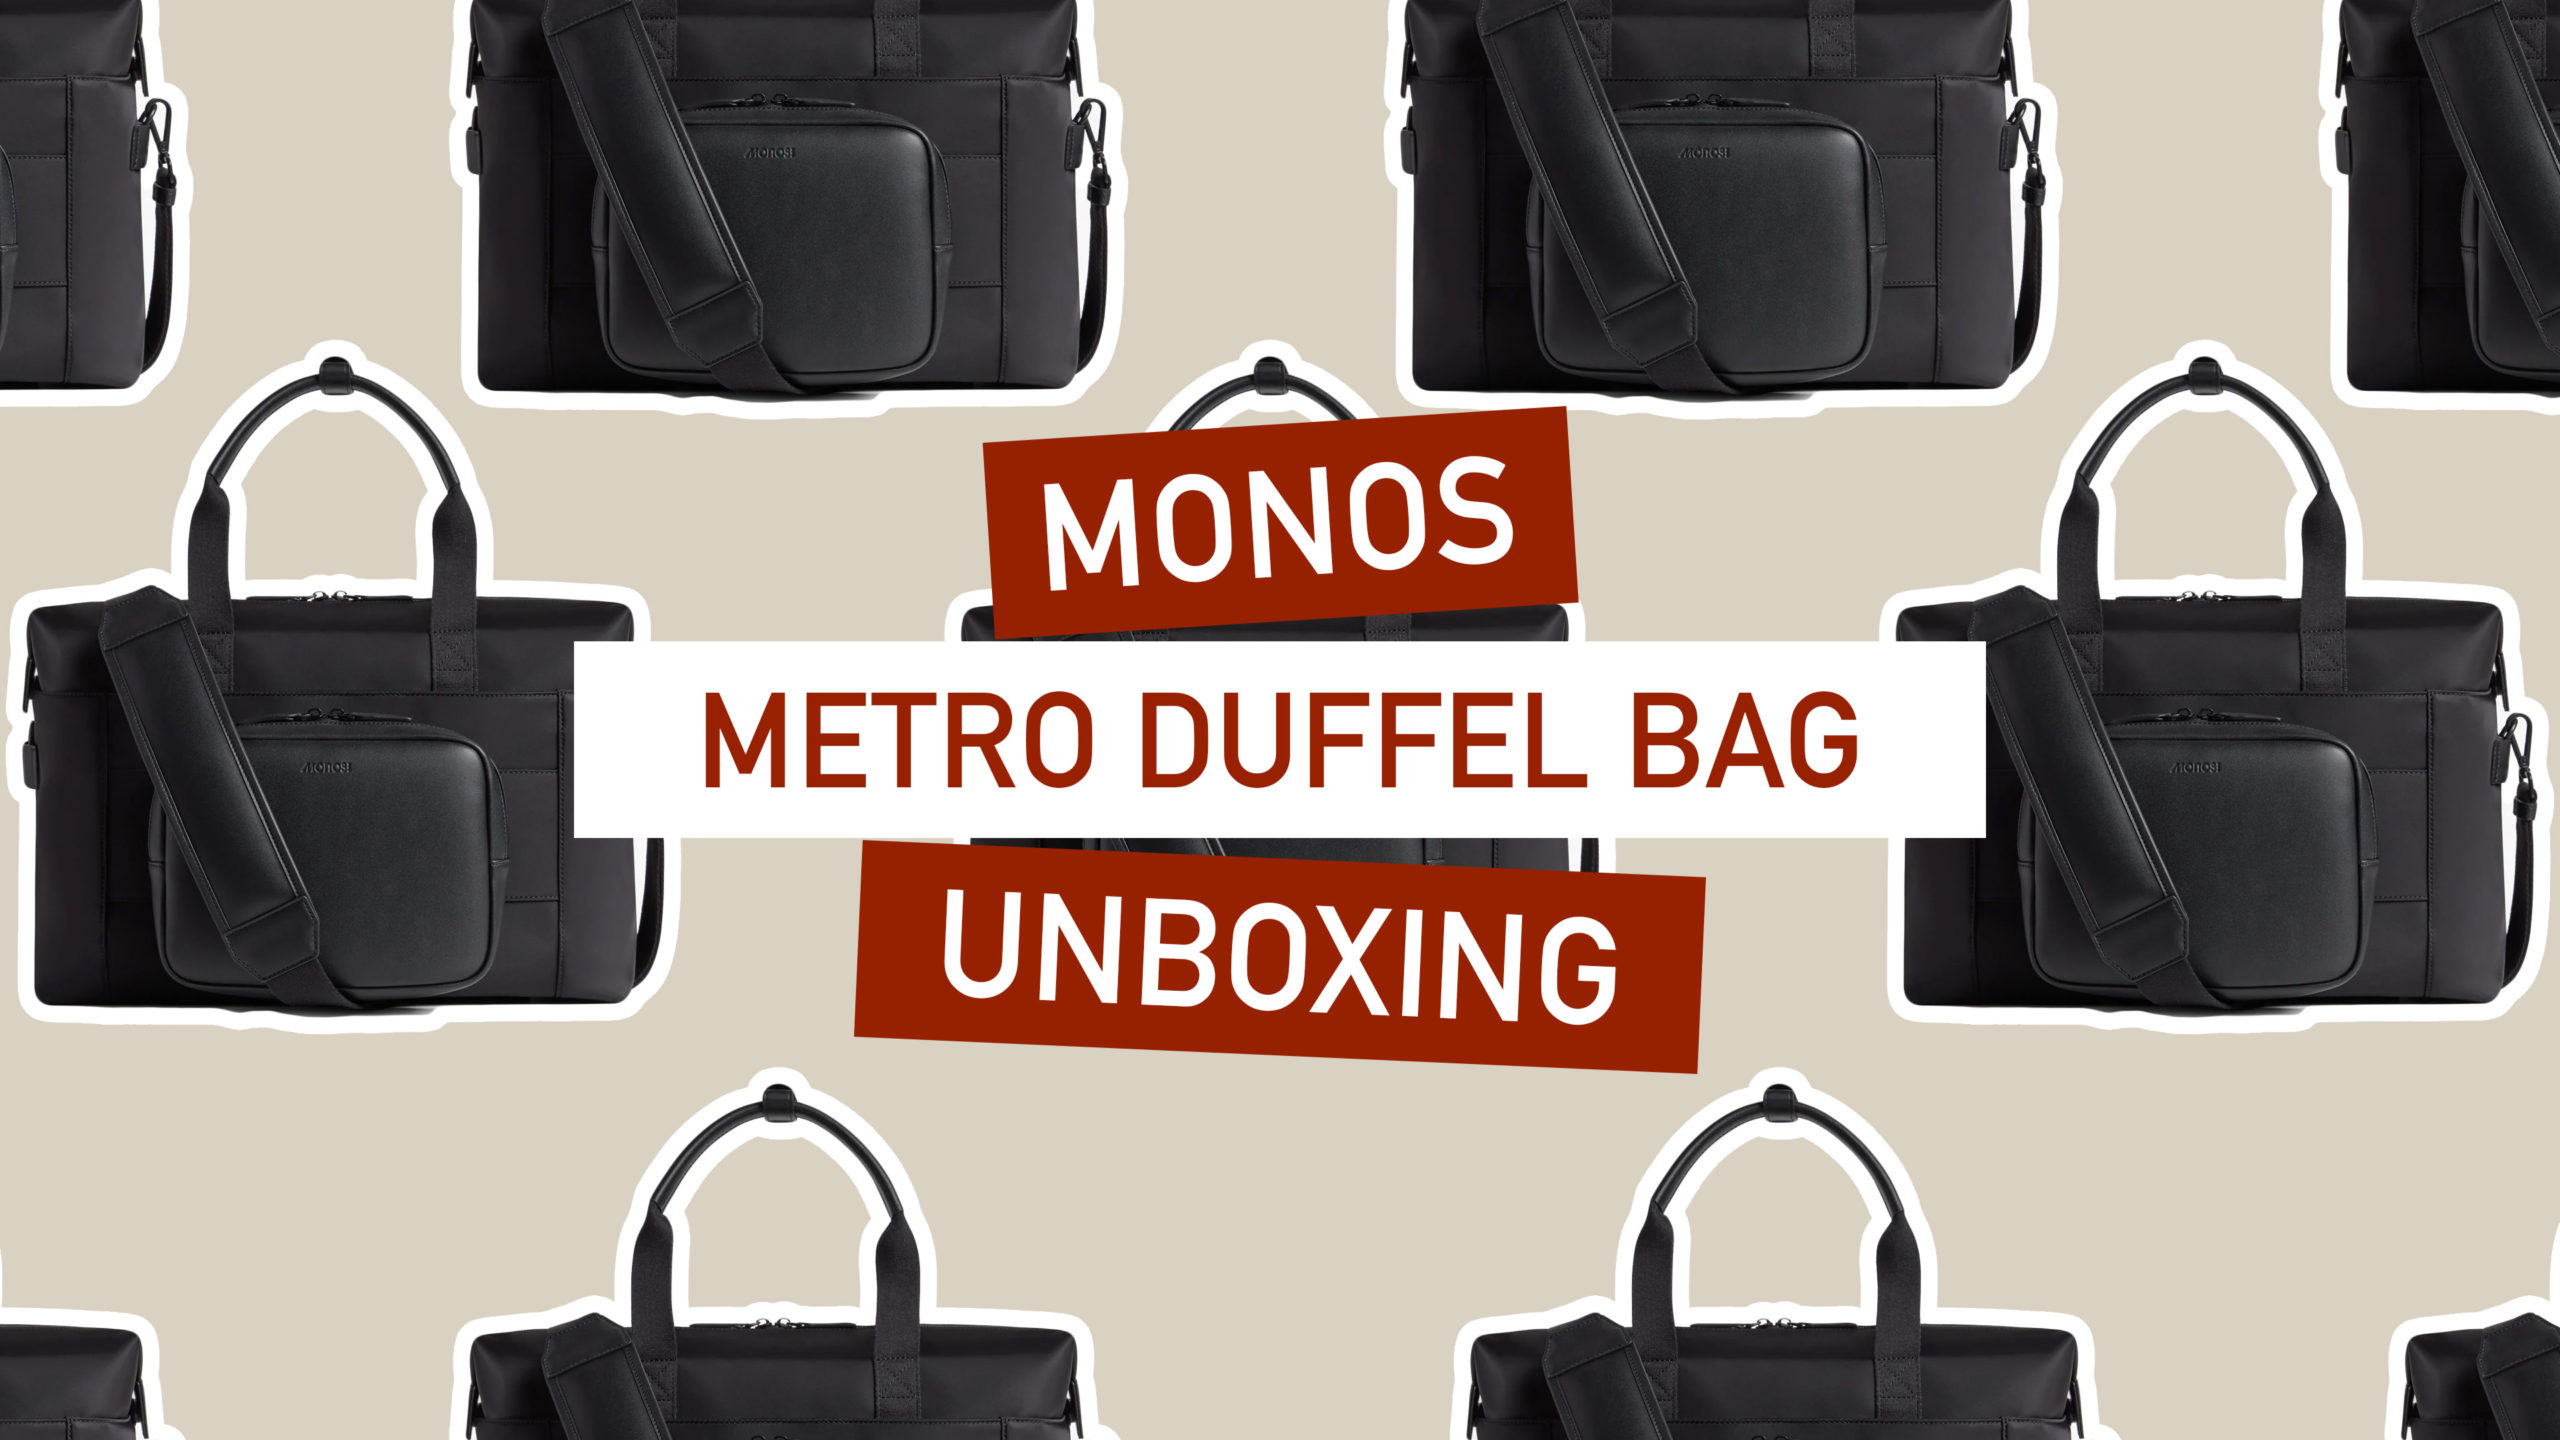 monos travel bag review